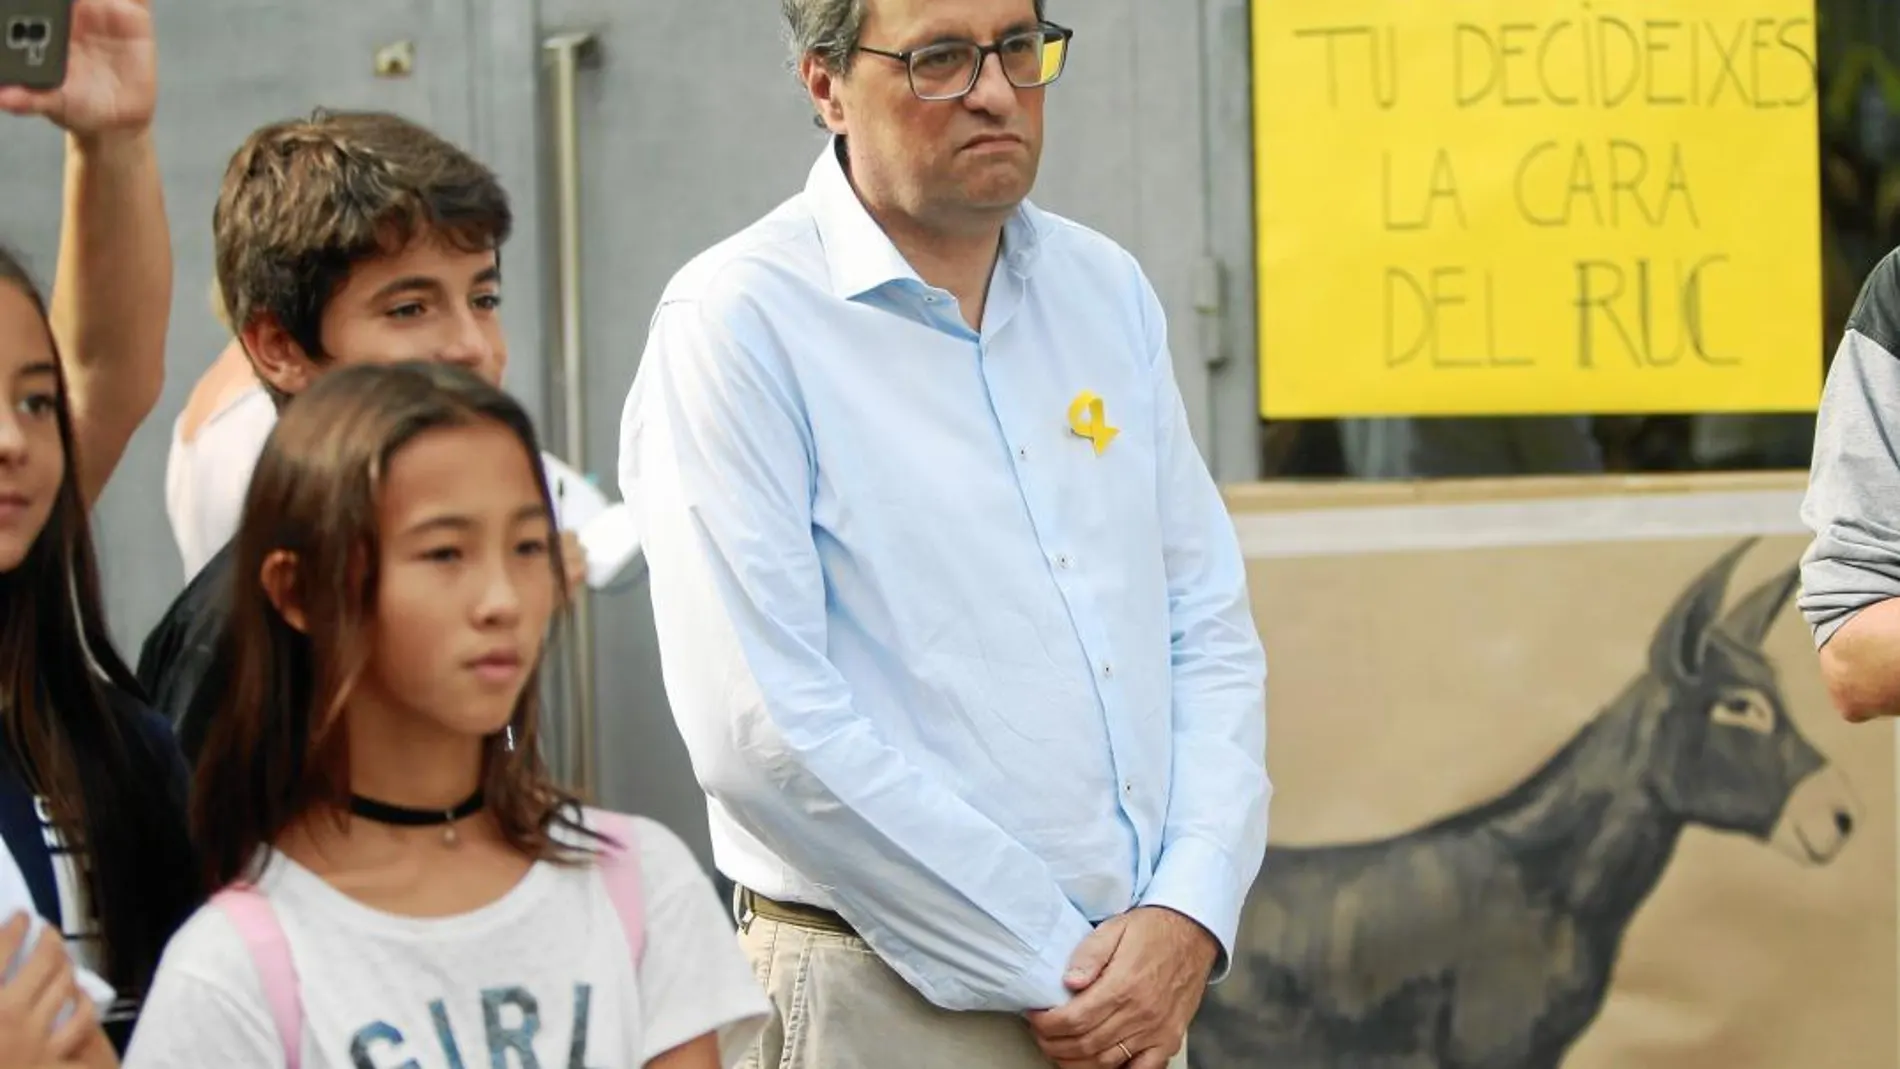 El president de la Generalitat, Quim Torra, ayer en el colegio donde votó hace un año y en el que se celebraron actos para conmemorar la consulta ilegal